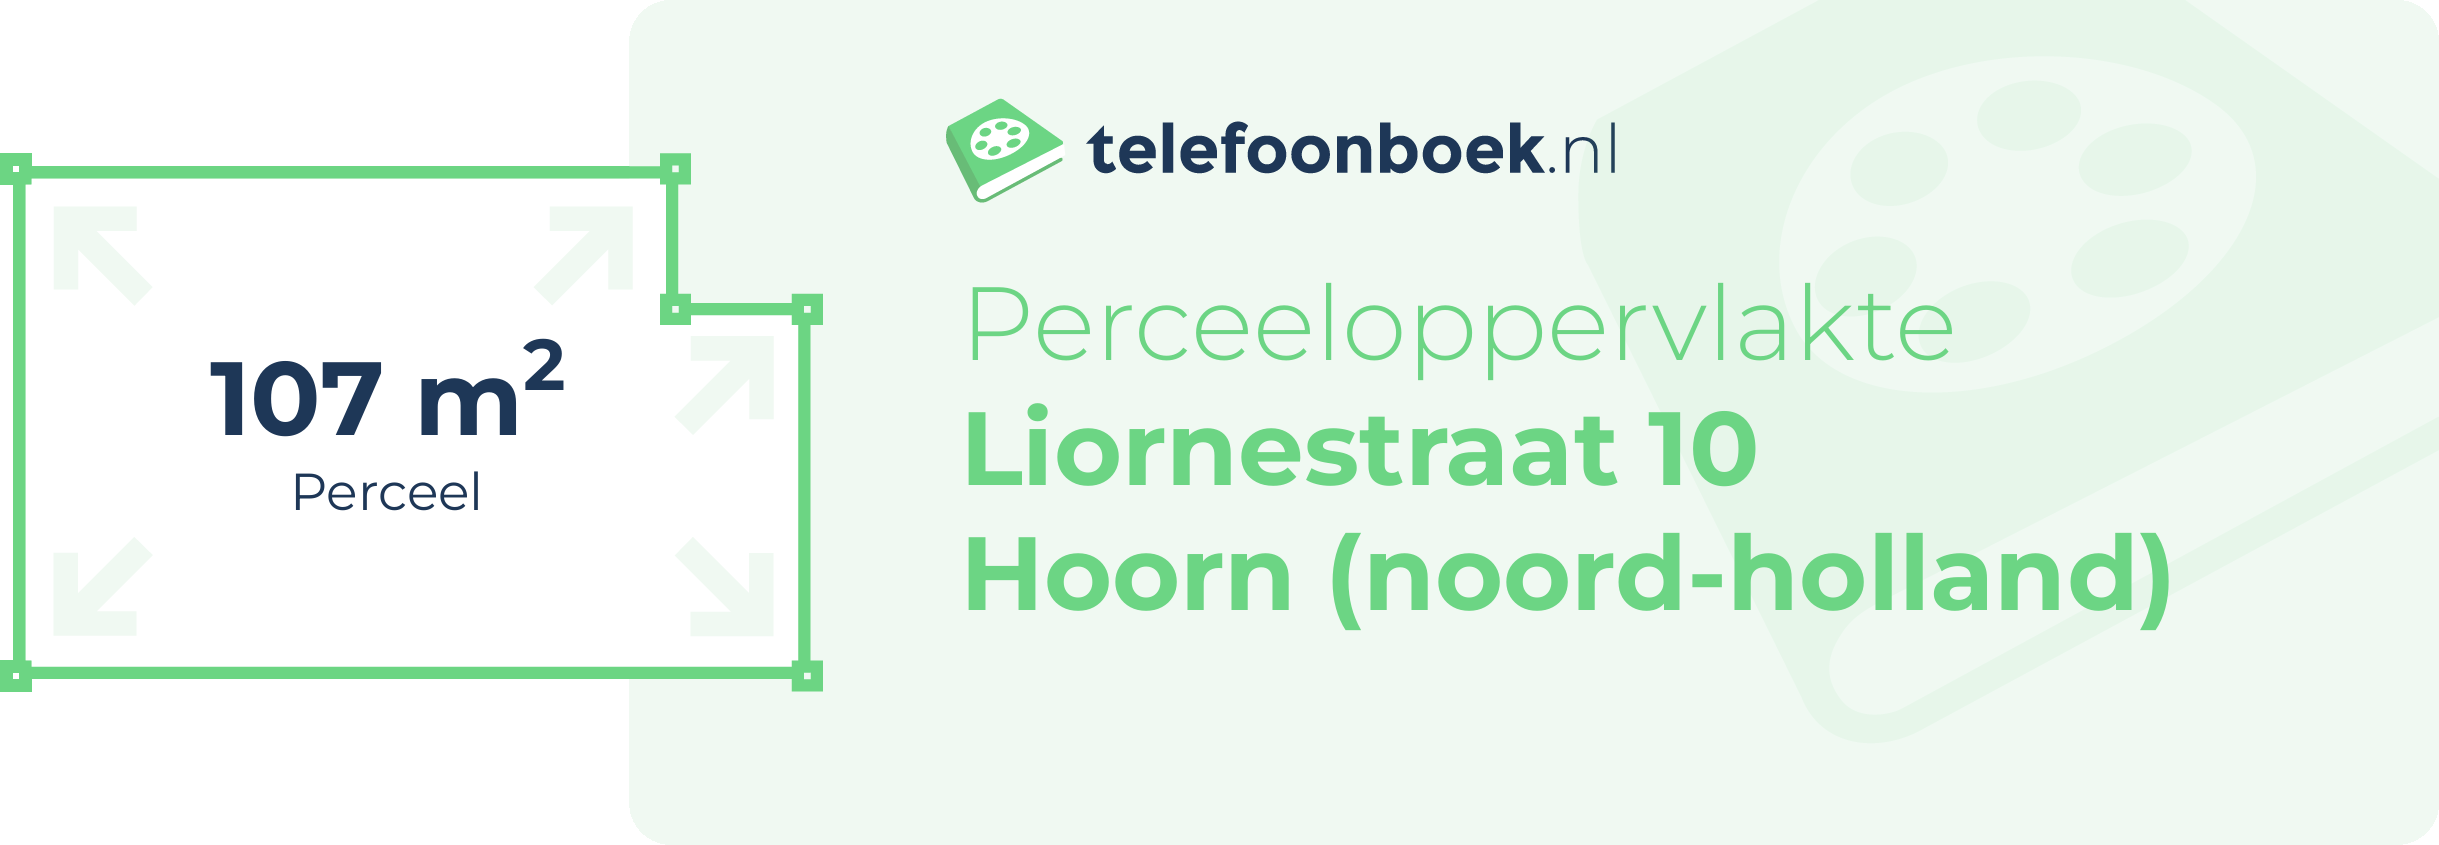 Perceeloppervlakte Liornestraat 10 Hoorn (Noord-Holland)